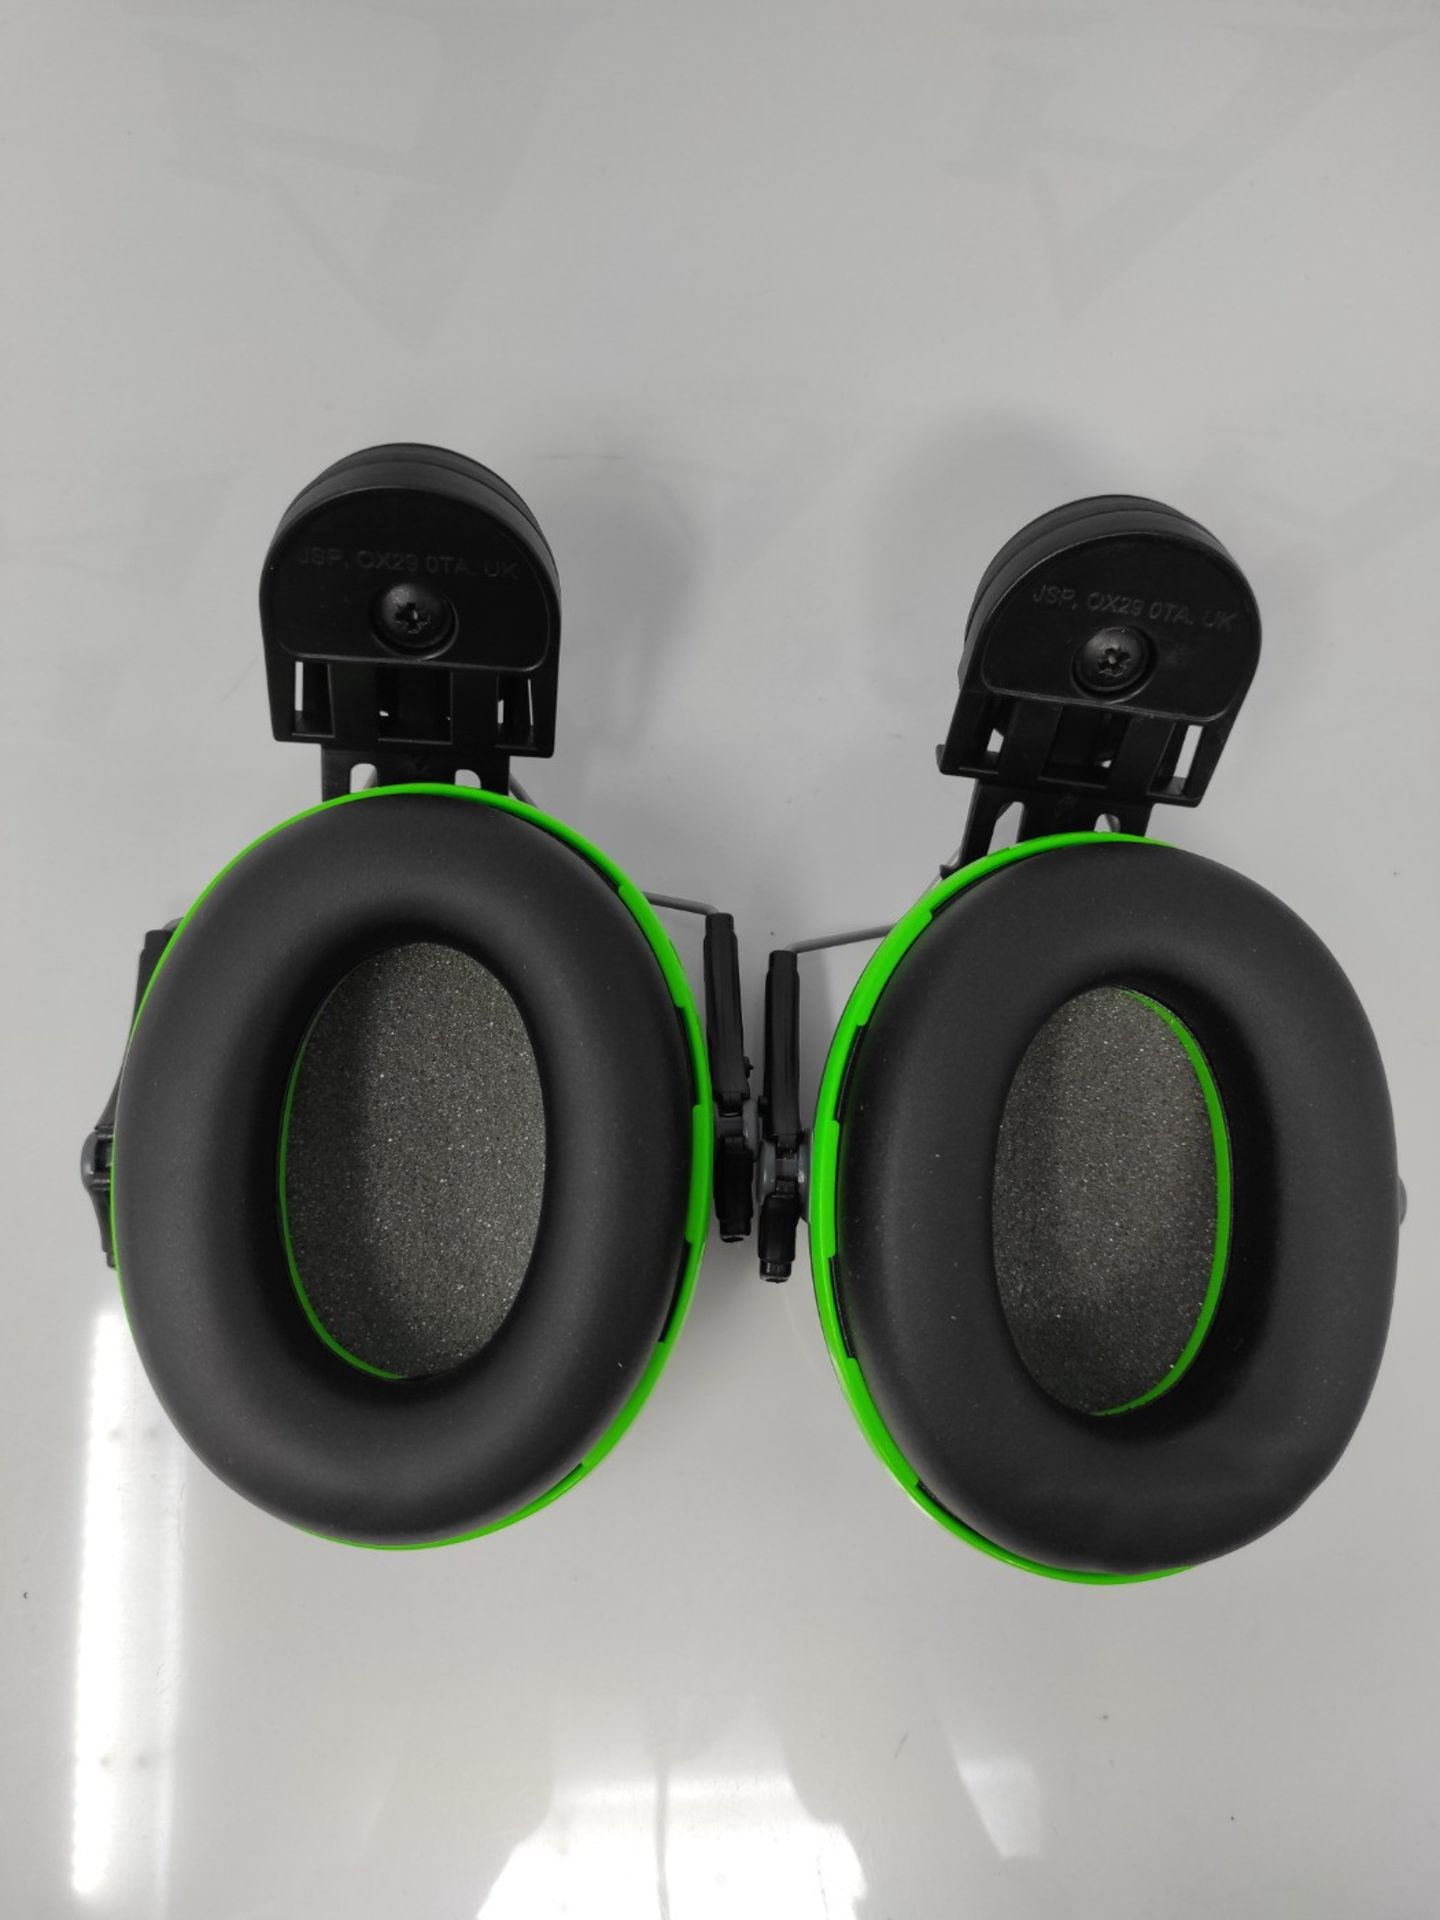 JSP Sonis 1 Helmet Mounted Ear Defenders - SNR 26 - (AEB010-0CY-800), Grey / Green,One - Image 2 of 2